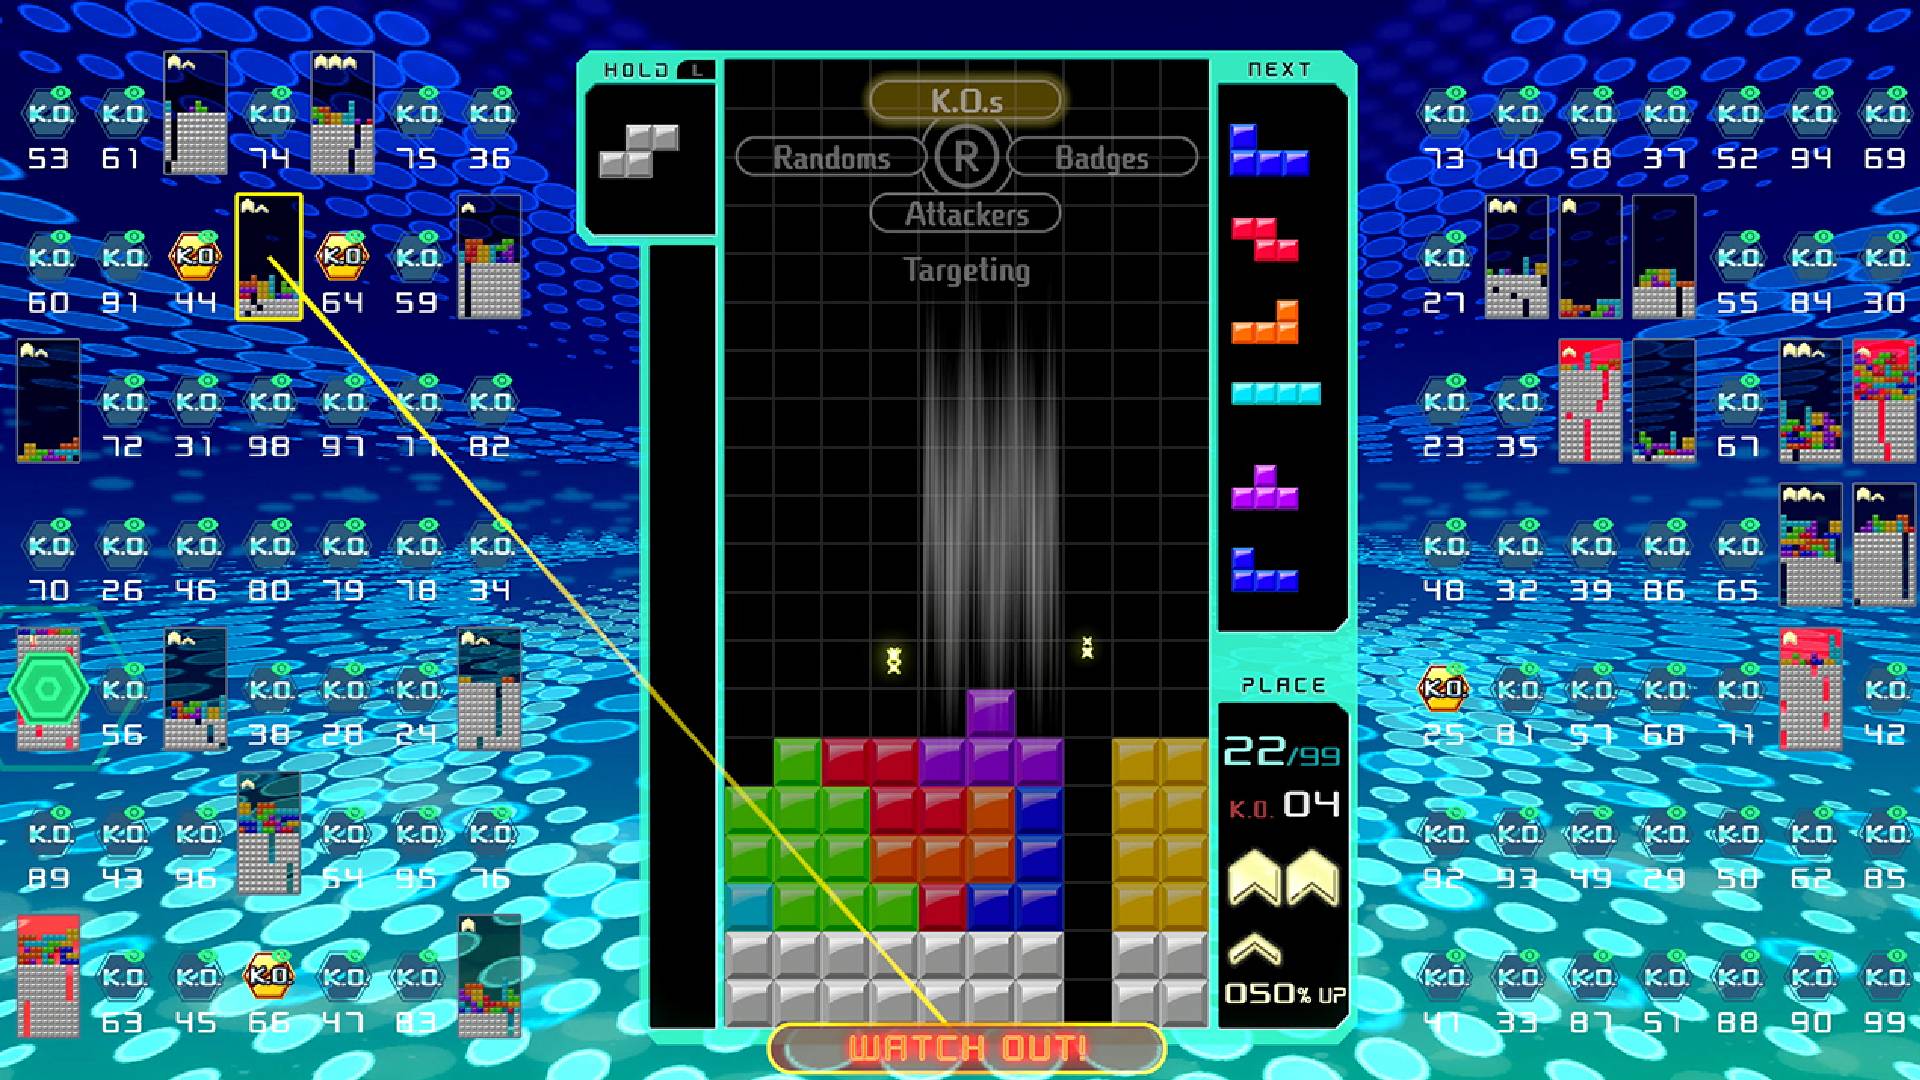 Gra w Tetrisa jest rozgrywana, podczas gdy na głównym wyświetlaczu wyświetlanych jest 98 innych gier w Tetrisa